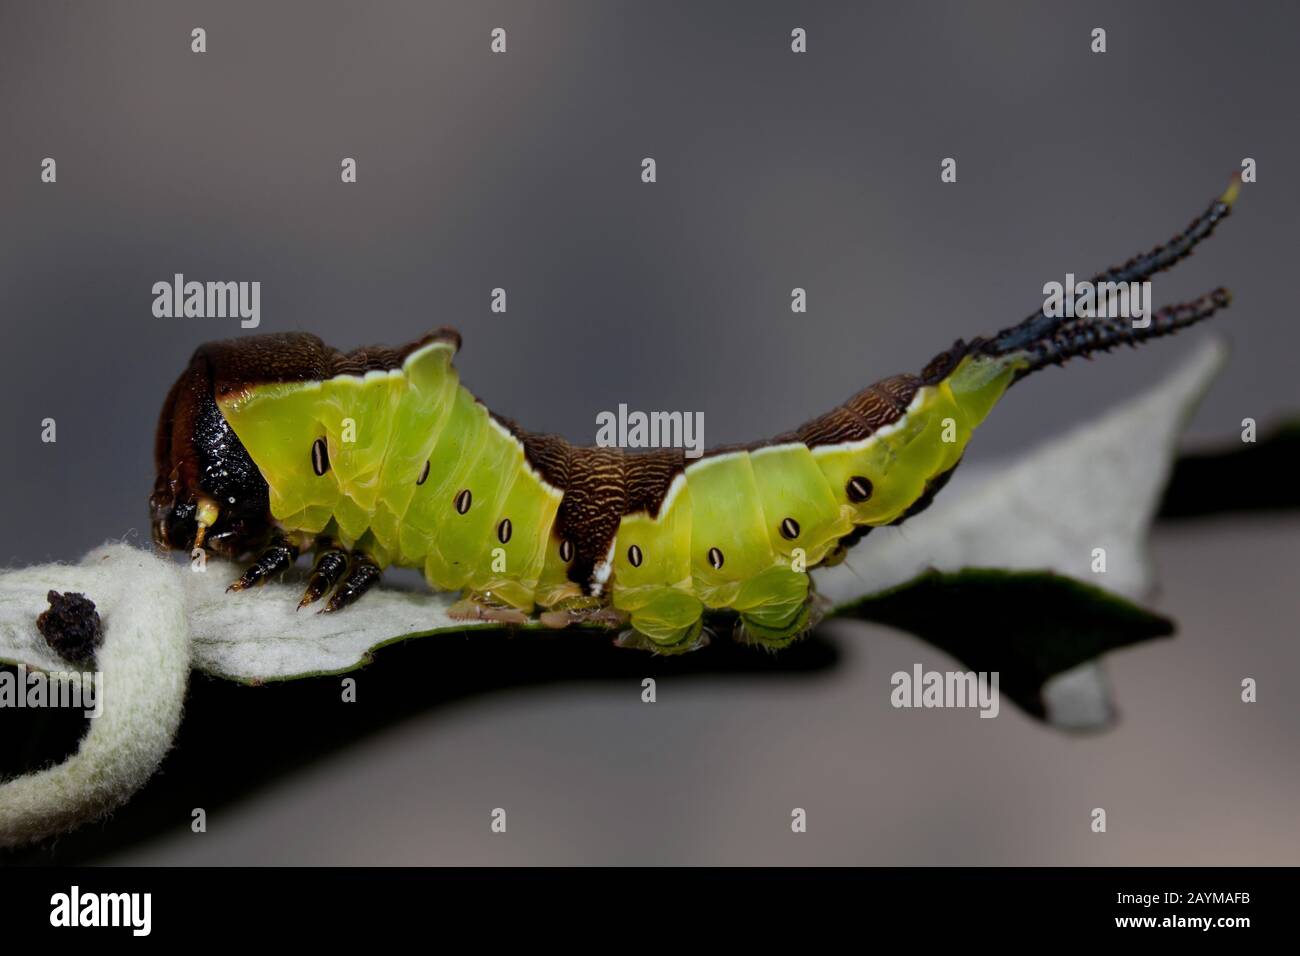 Minore falena di gatto, felina (Cerura erminea), caterpillar su una foglia appassita, Germania Foto Stock